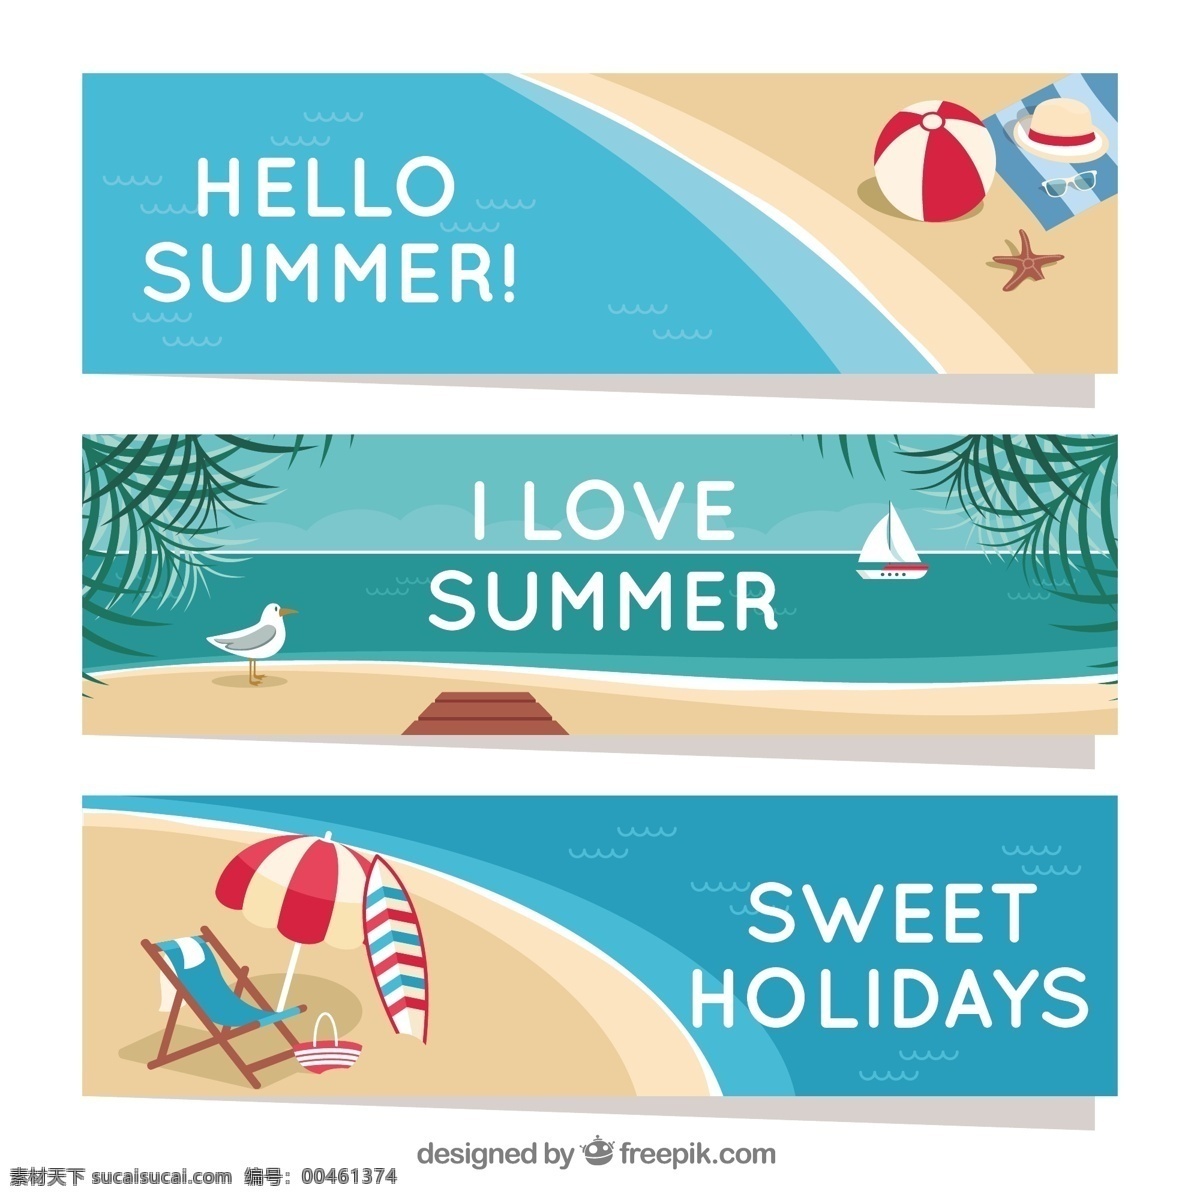 收集 三个 平坦 夏季 旗帜 海洋 海滩 横幅 颜色 假日 公寓 船 平面设计 装饰 度假 沙滩 夏季海滩 季节 三 项目